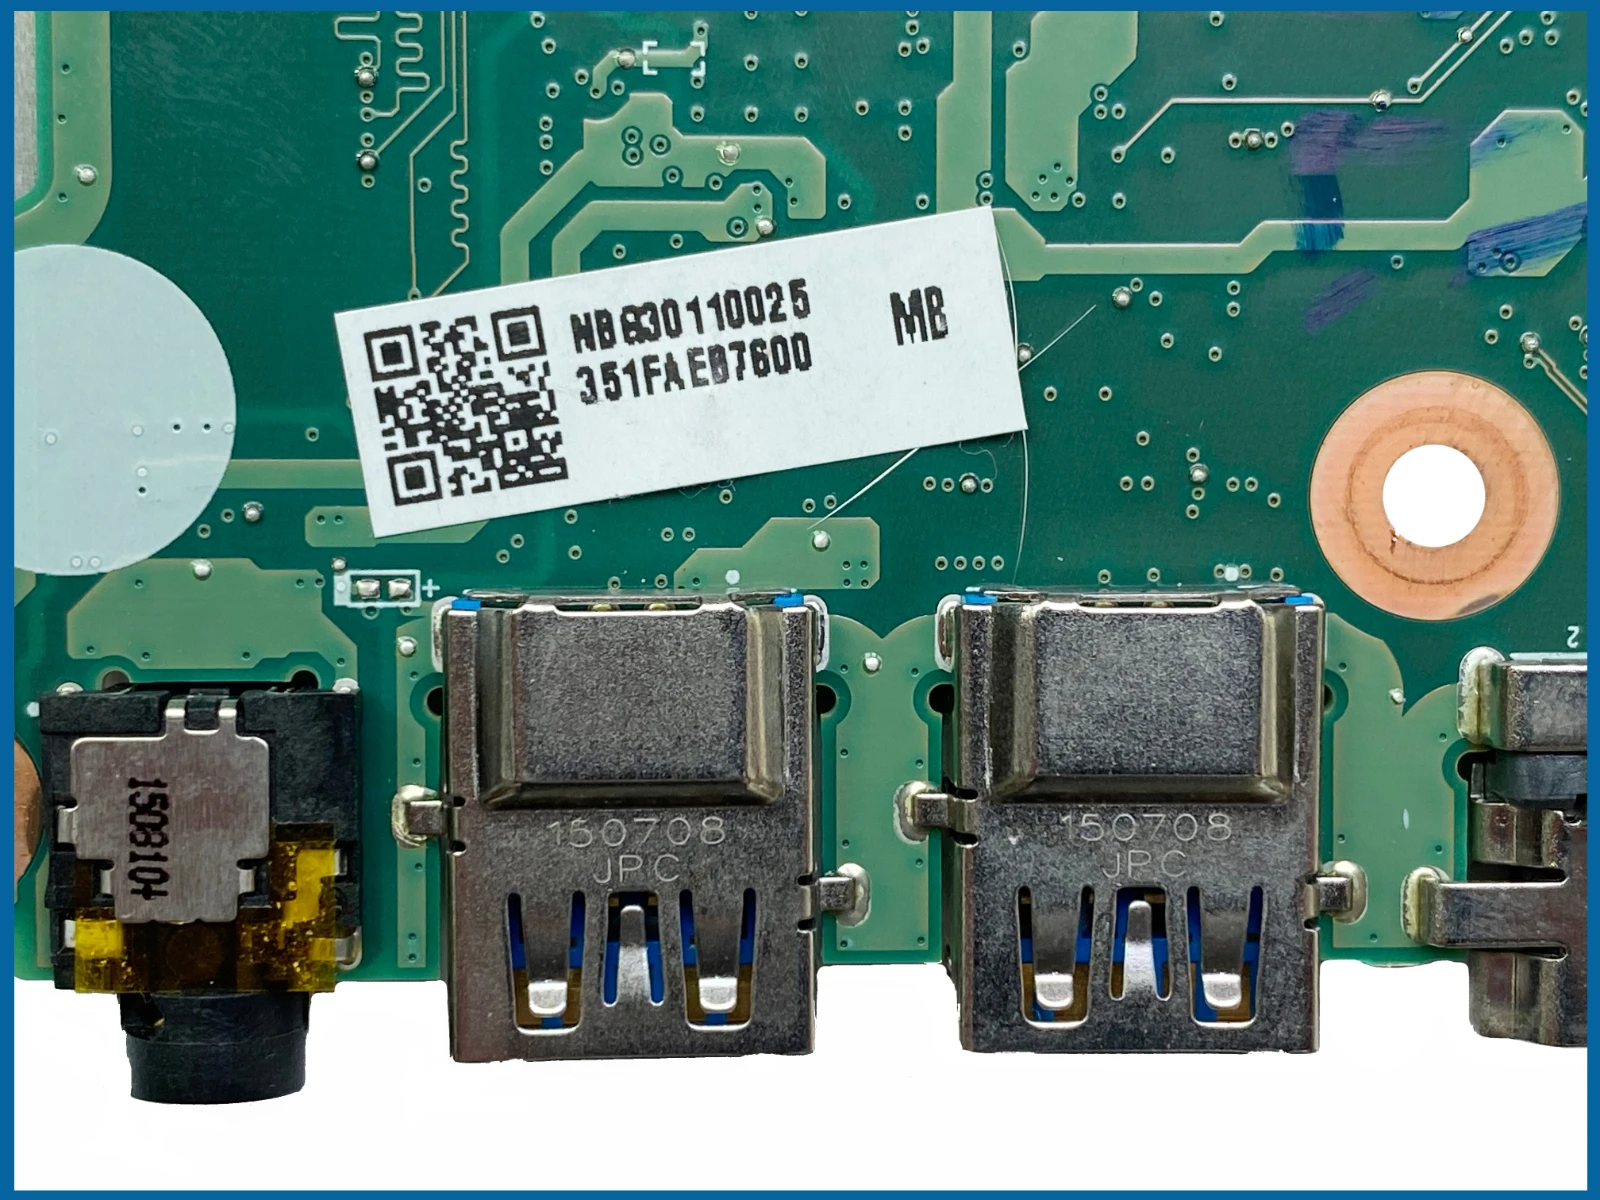 Най-добрата стойност DA0ZRWMB6G0 за Acer Aspire E5-574G F5-572G V3-575G дънна Платка на лаптоп I5-6200U N16S-GT-S-A2 DDR3 100% тествана